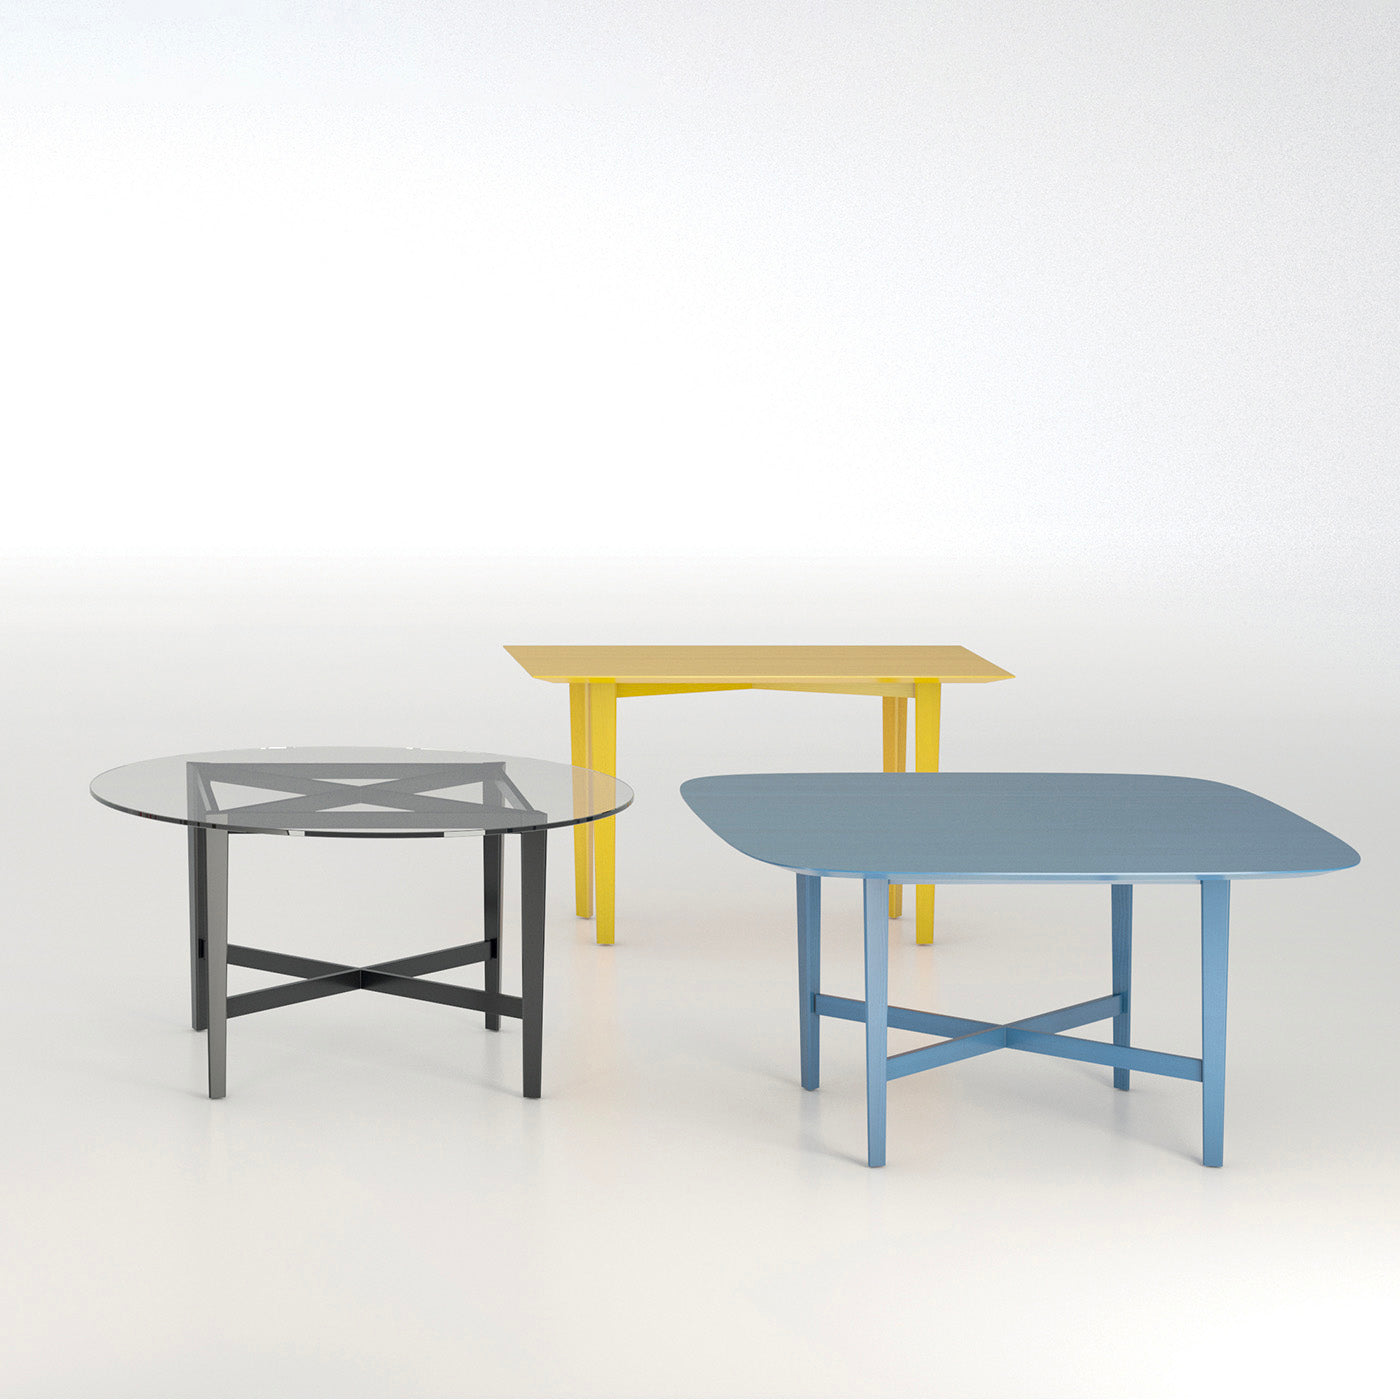 Luigi Filippo Yellow Desk by Marta Laudani & Marco Romanelli - Alternative view 1